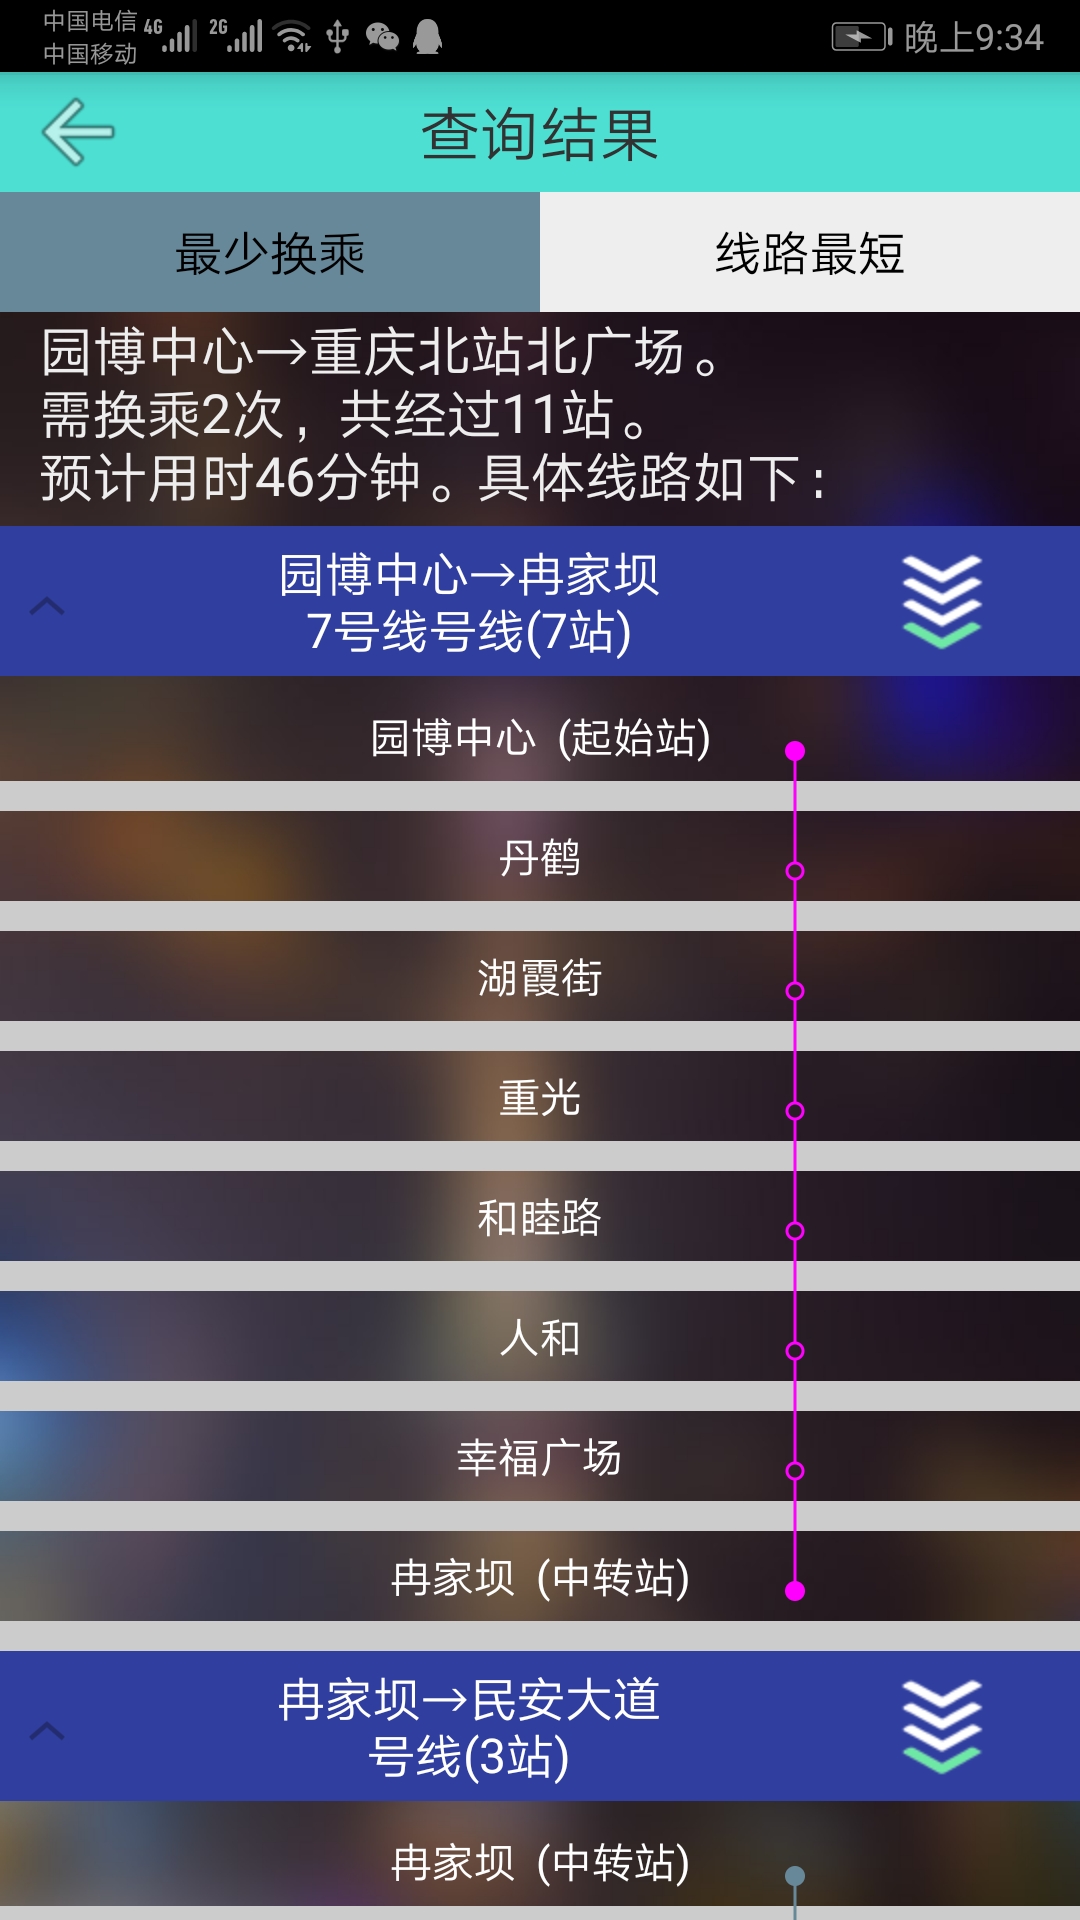 重庆地铁查询v1.3截图5